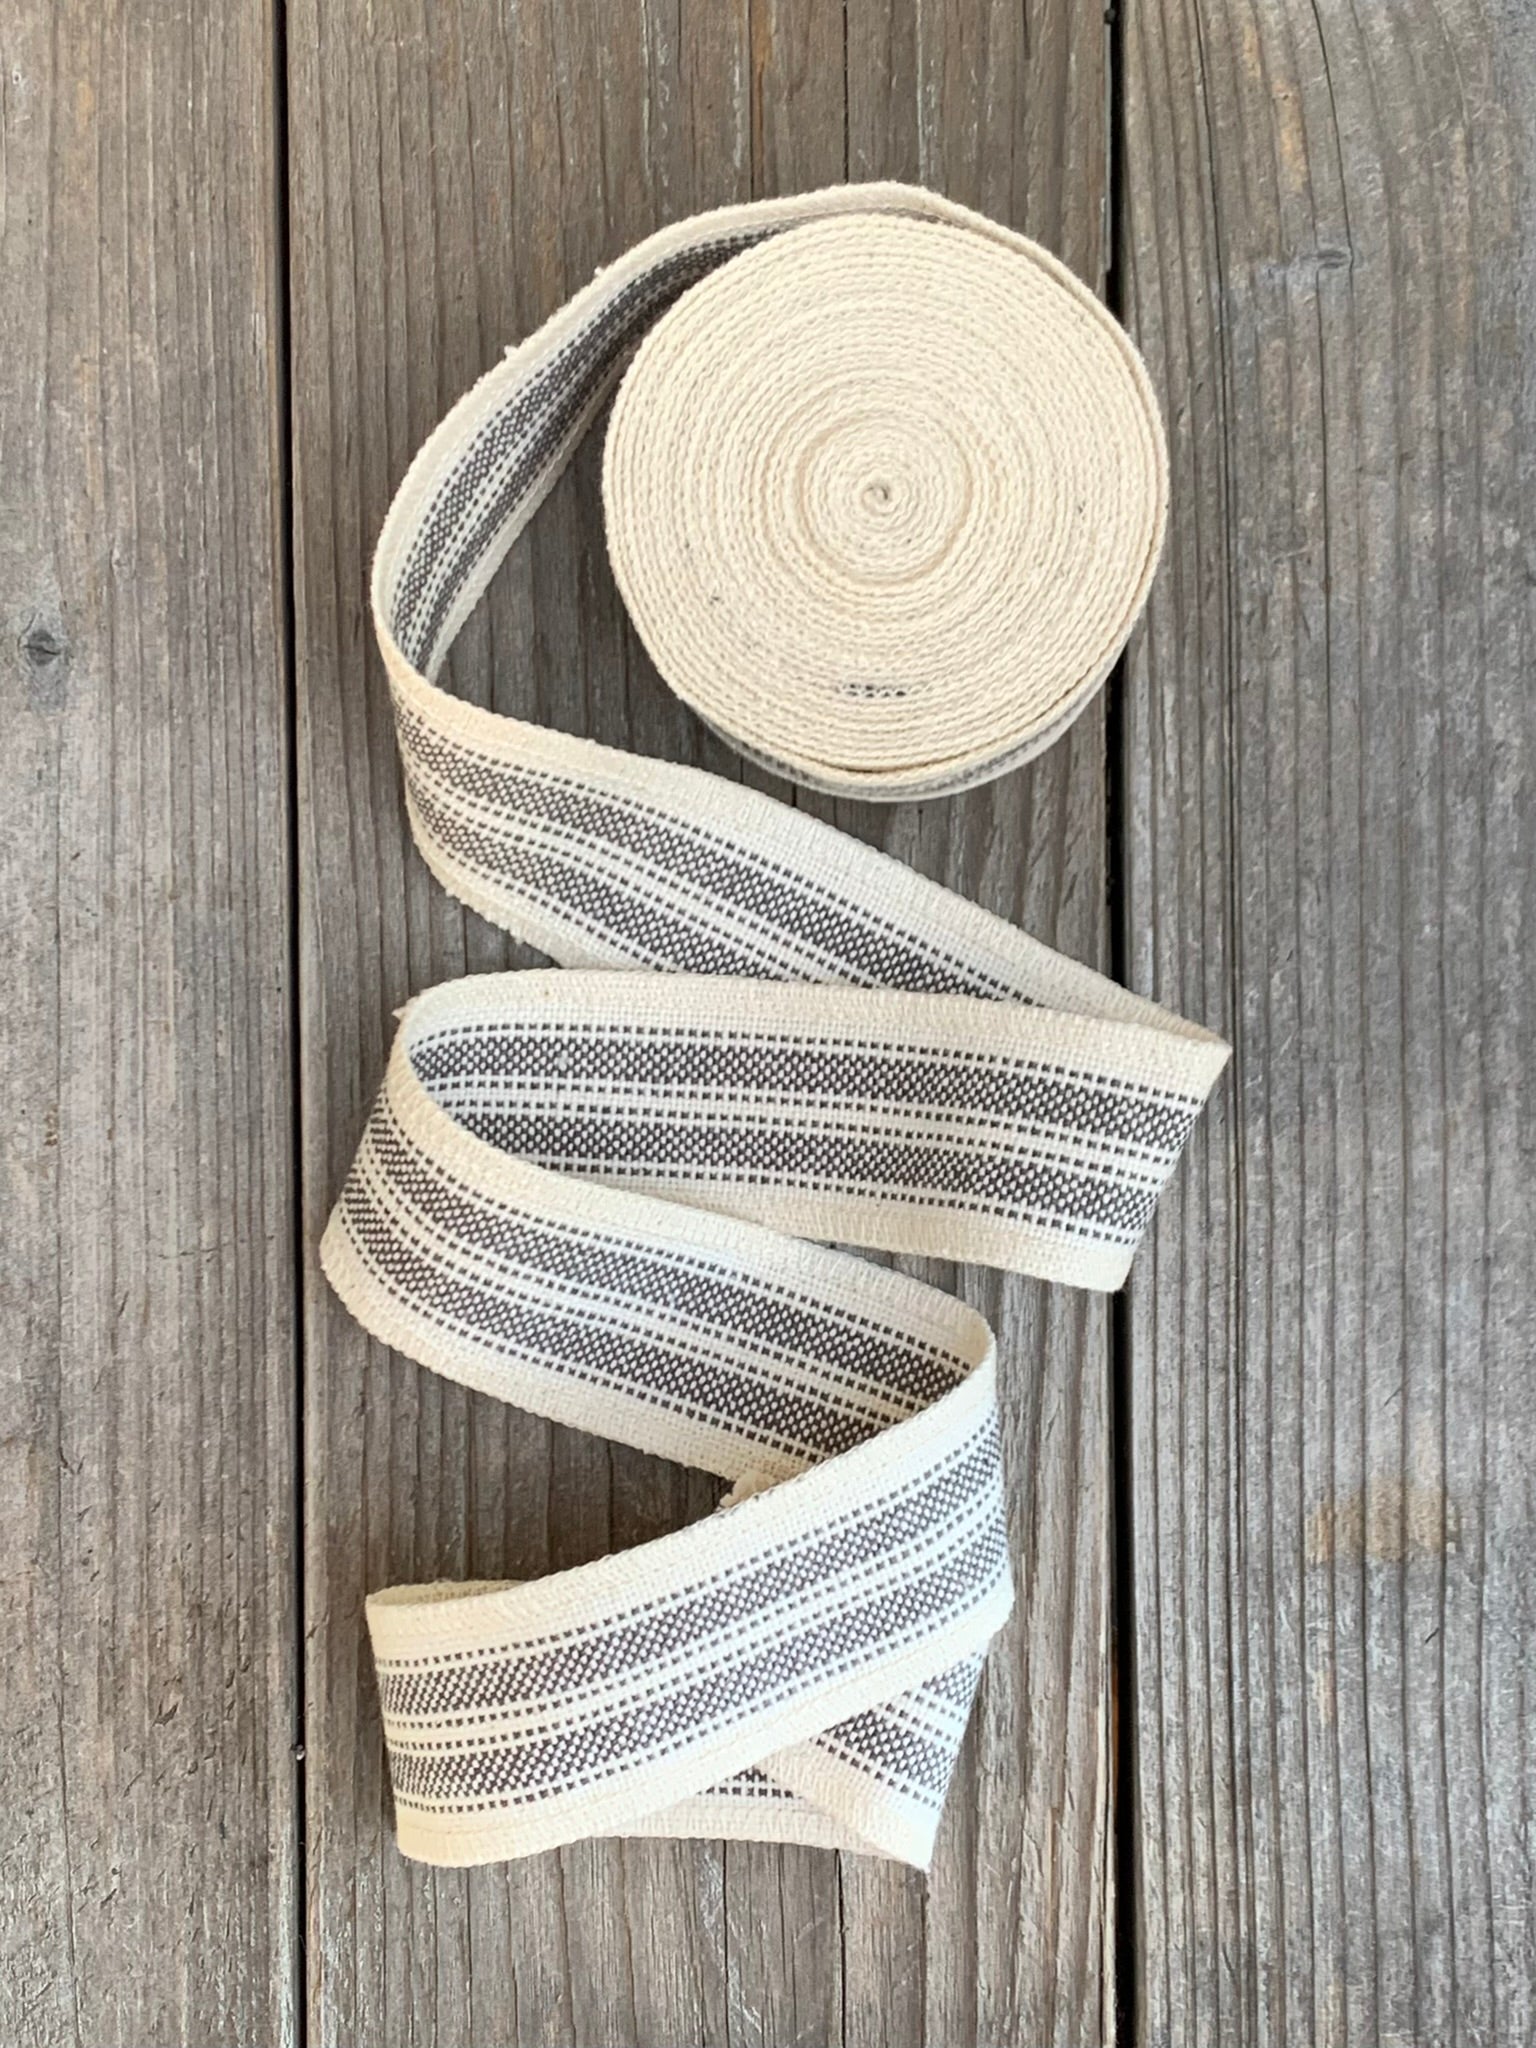 Grain Sack Ribbon - Gray and Cream Stripe - 1 3/4 Wide